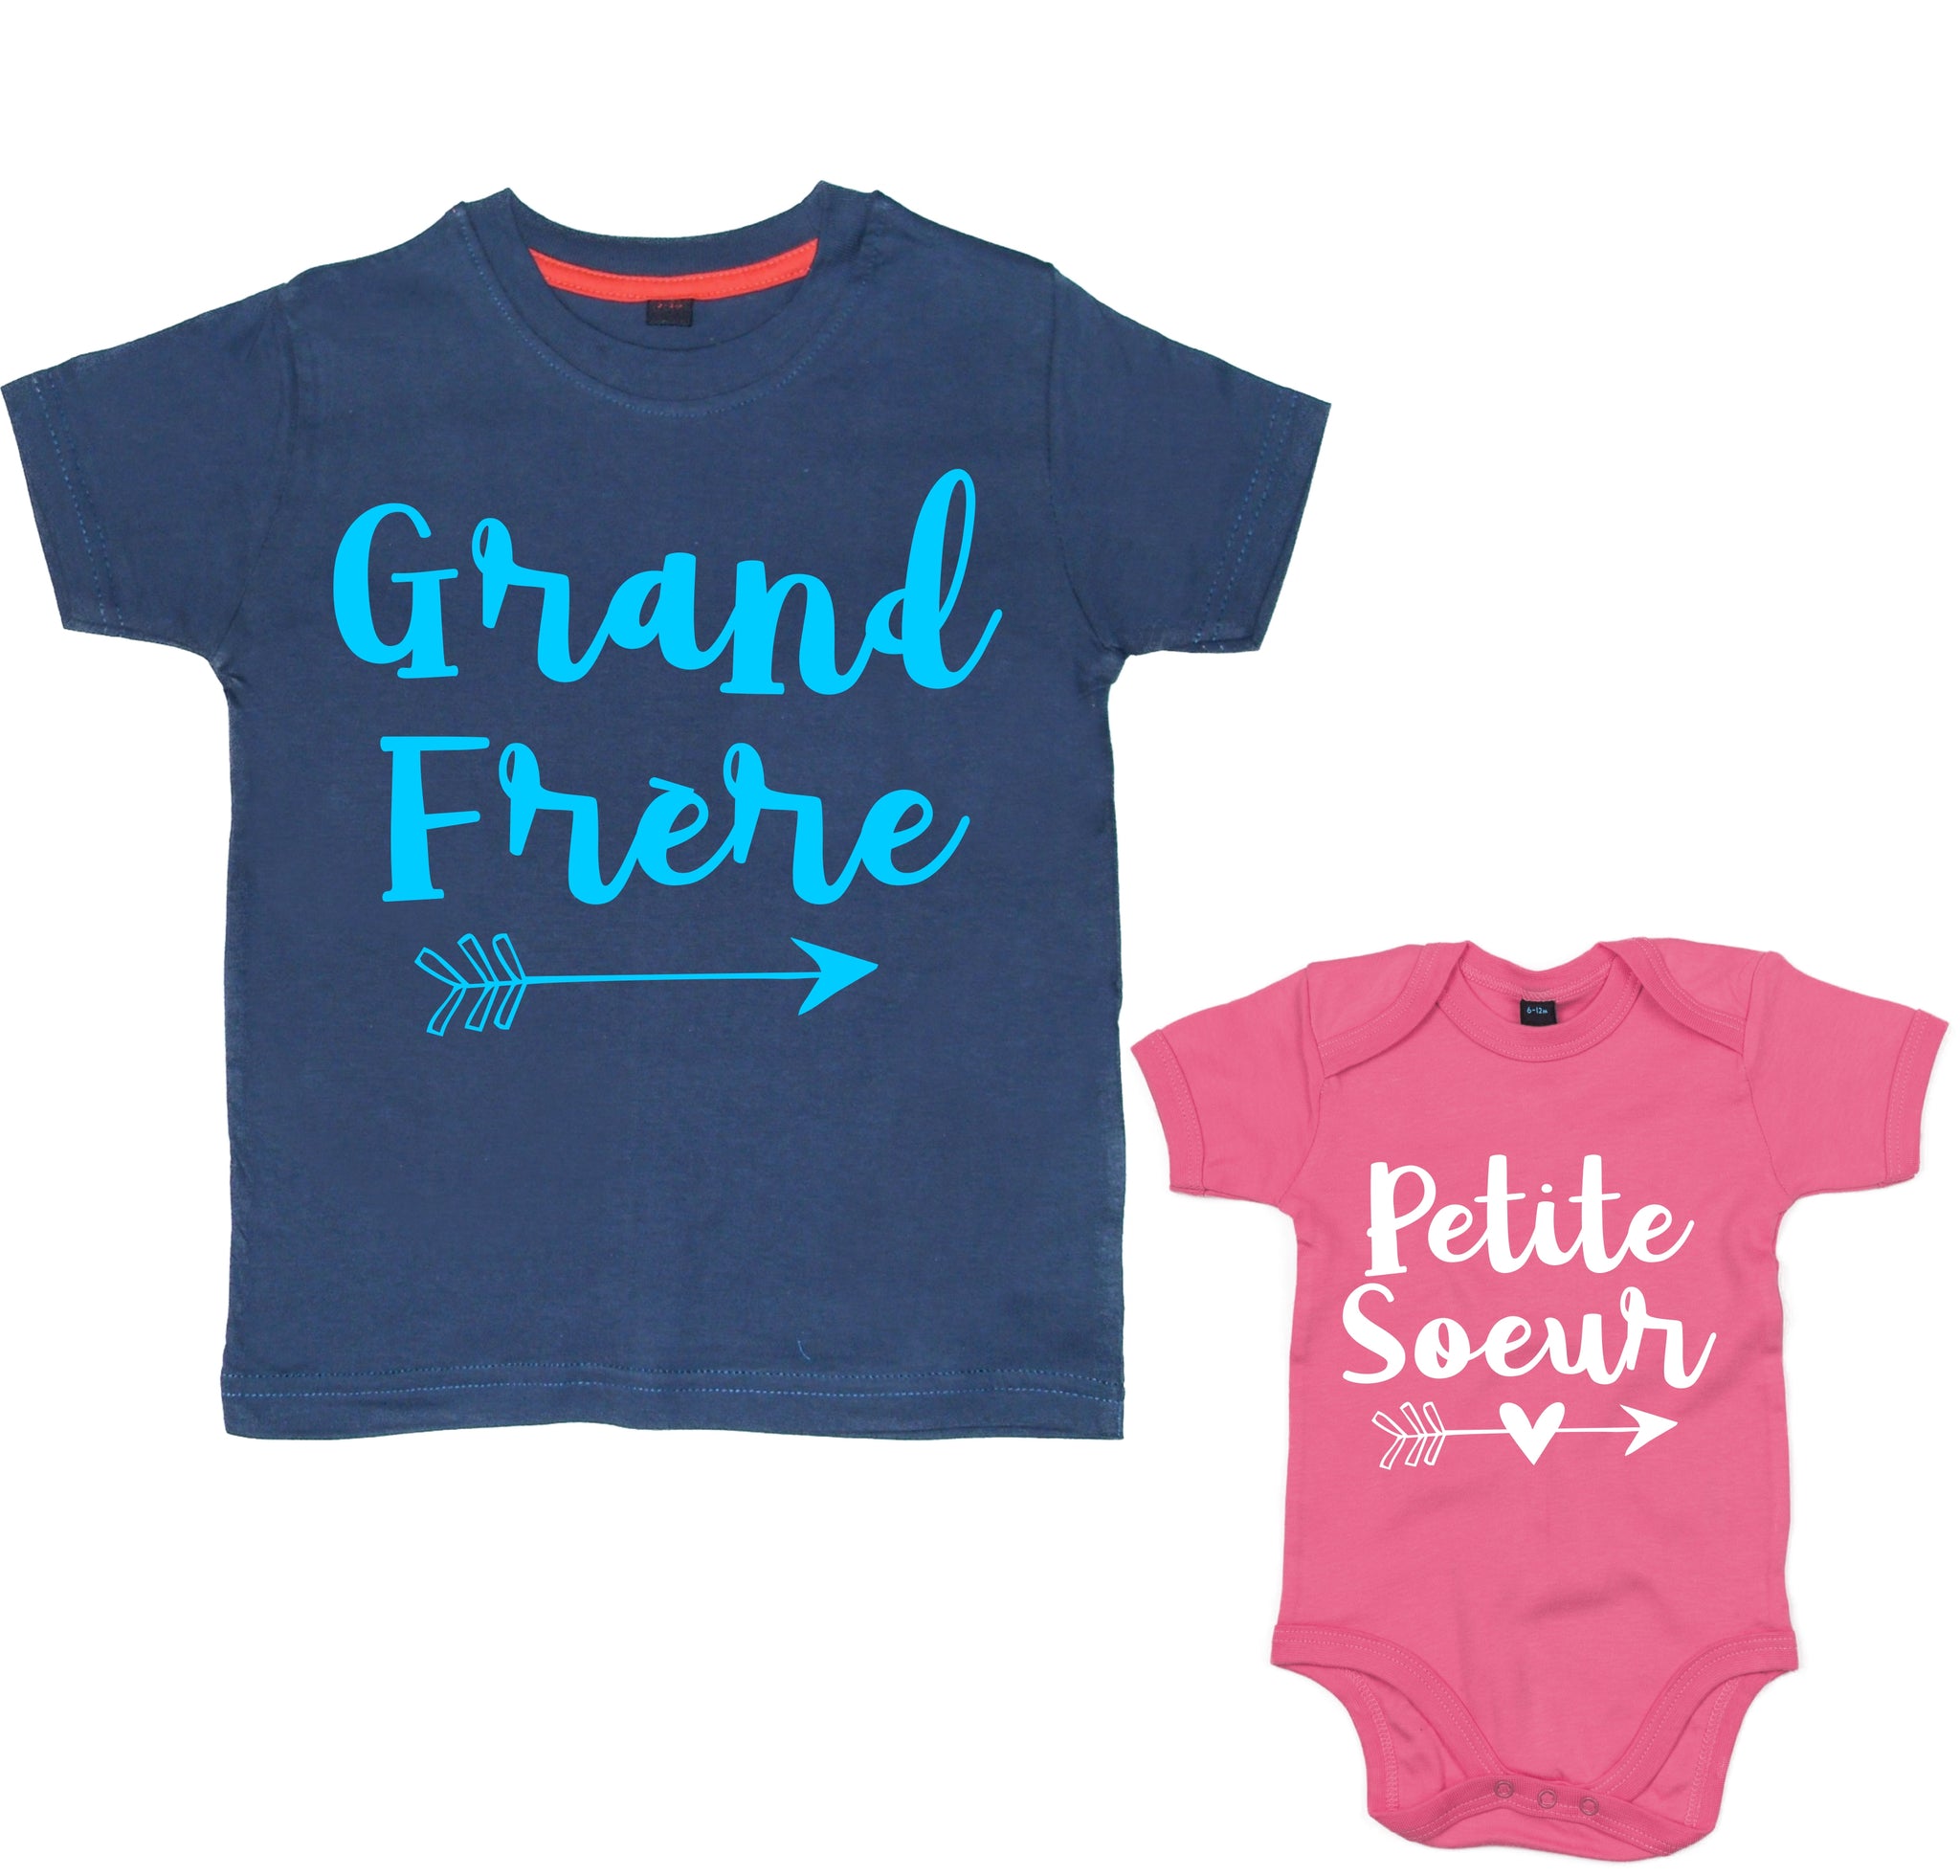 Arrow Grand Frère & Petite Soeur Navy T-shirt and Bubblegum Pink Baby Bodysuit